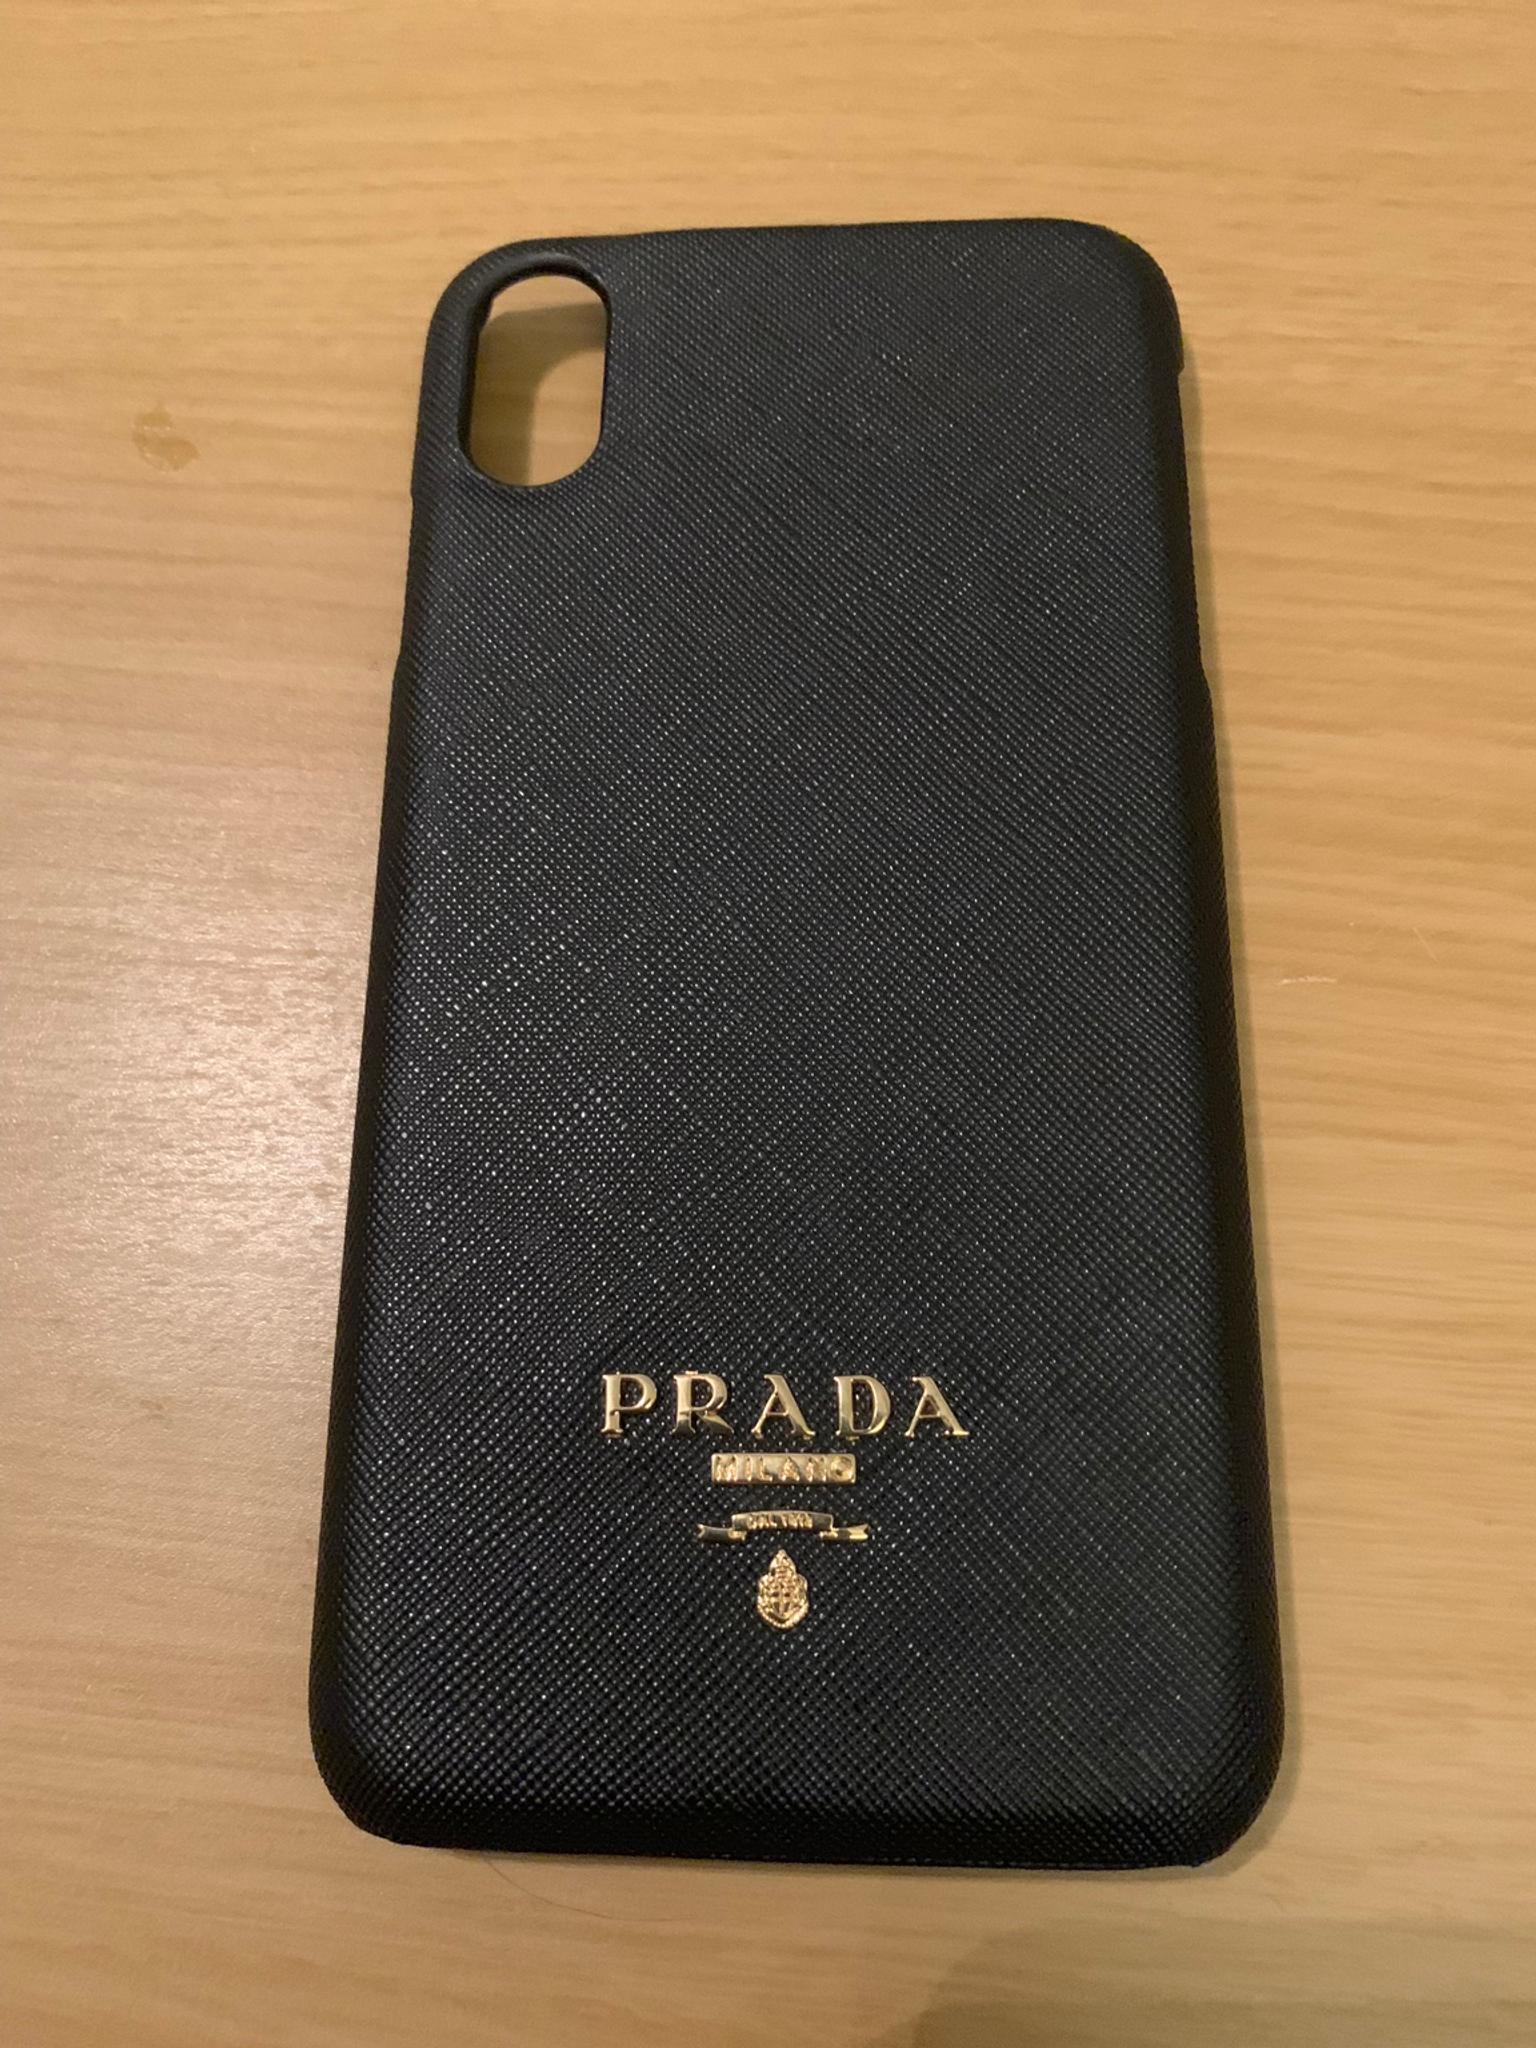 prada phone case iphone xs max